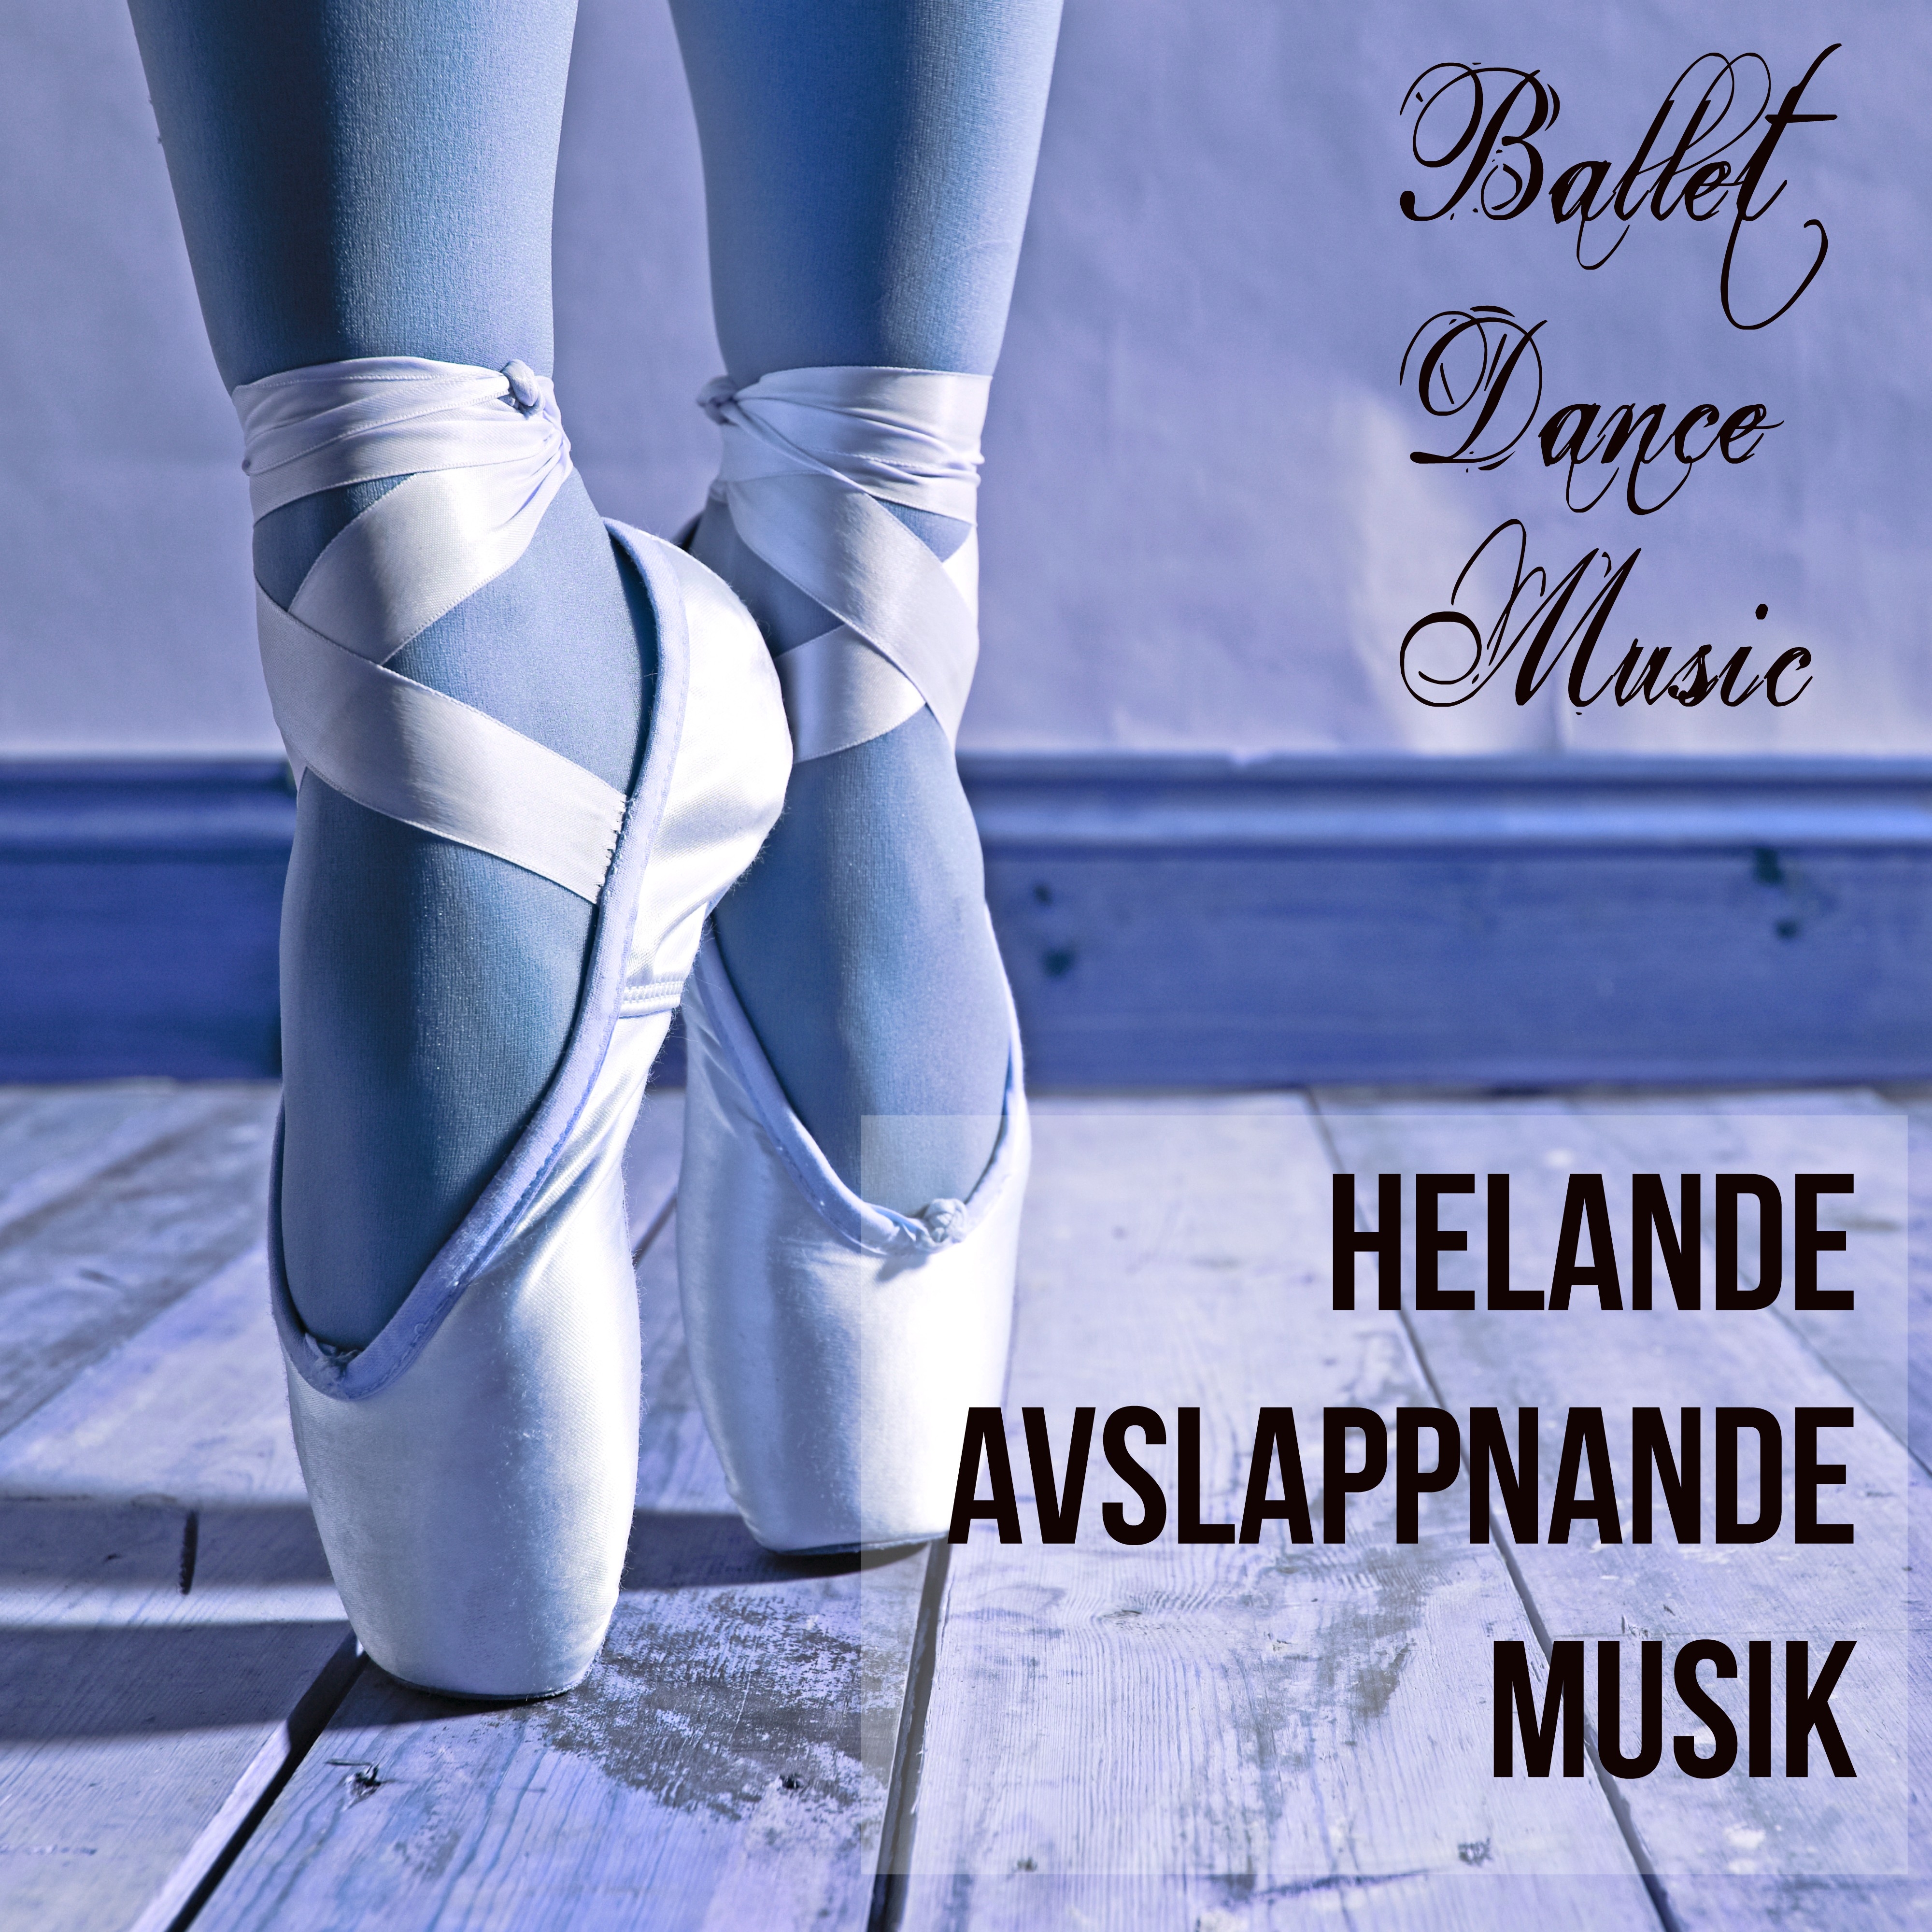 Ballet Dance Music  Helande Avslappnande Musik f r V gledd Meditation Chakra Alignment och Klassisk Balett